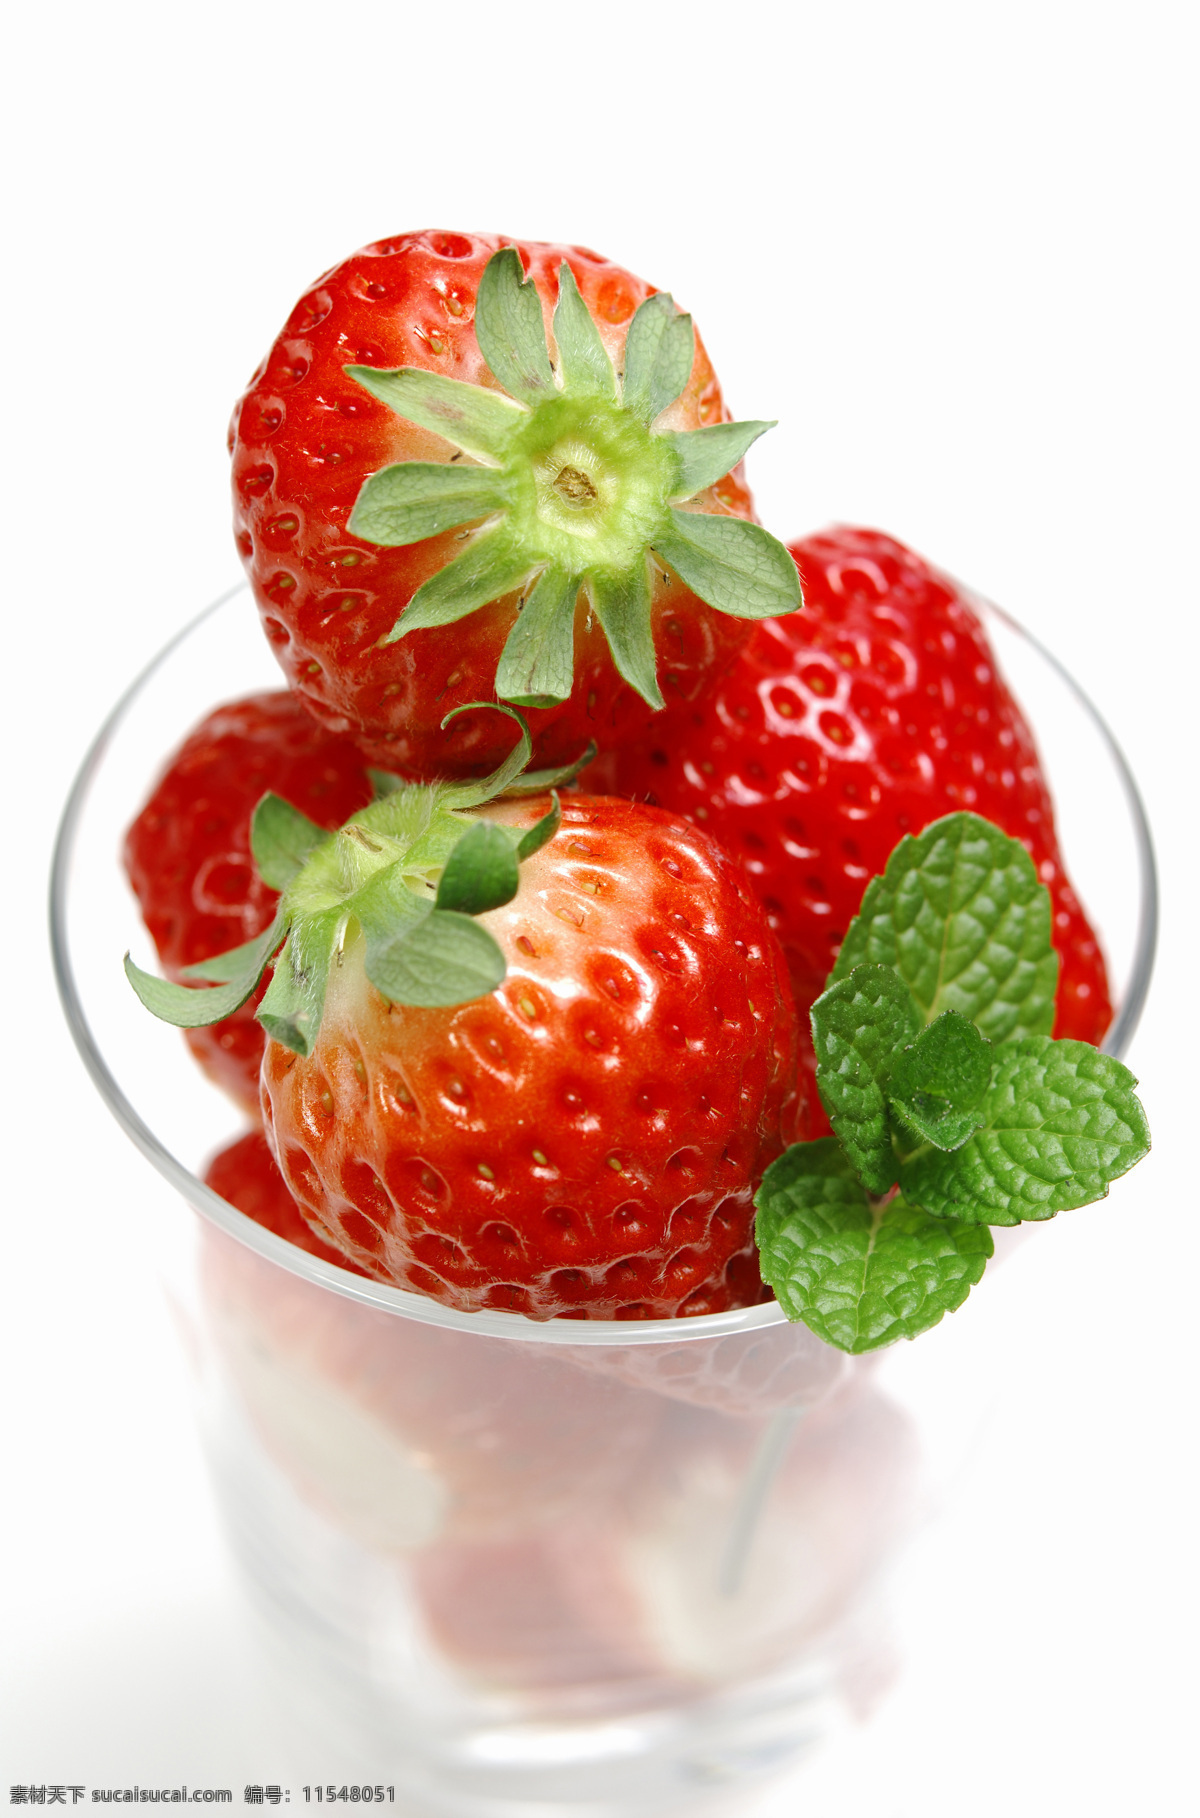 草莓069 草莓 草莓图片 草莓素材 草莓高清图片 草莓图片素材 水果 水果蔬菜 餐饮美食 白色